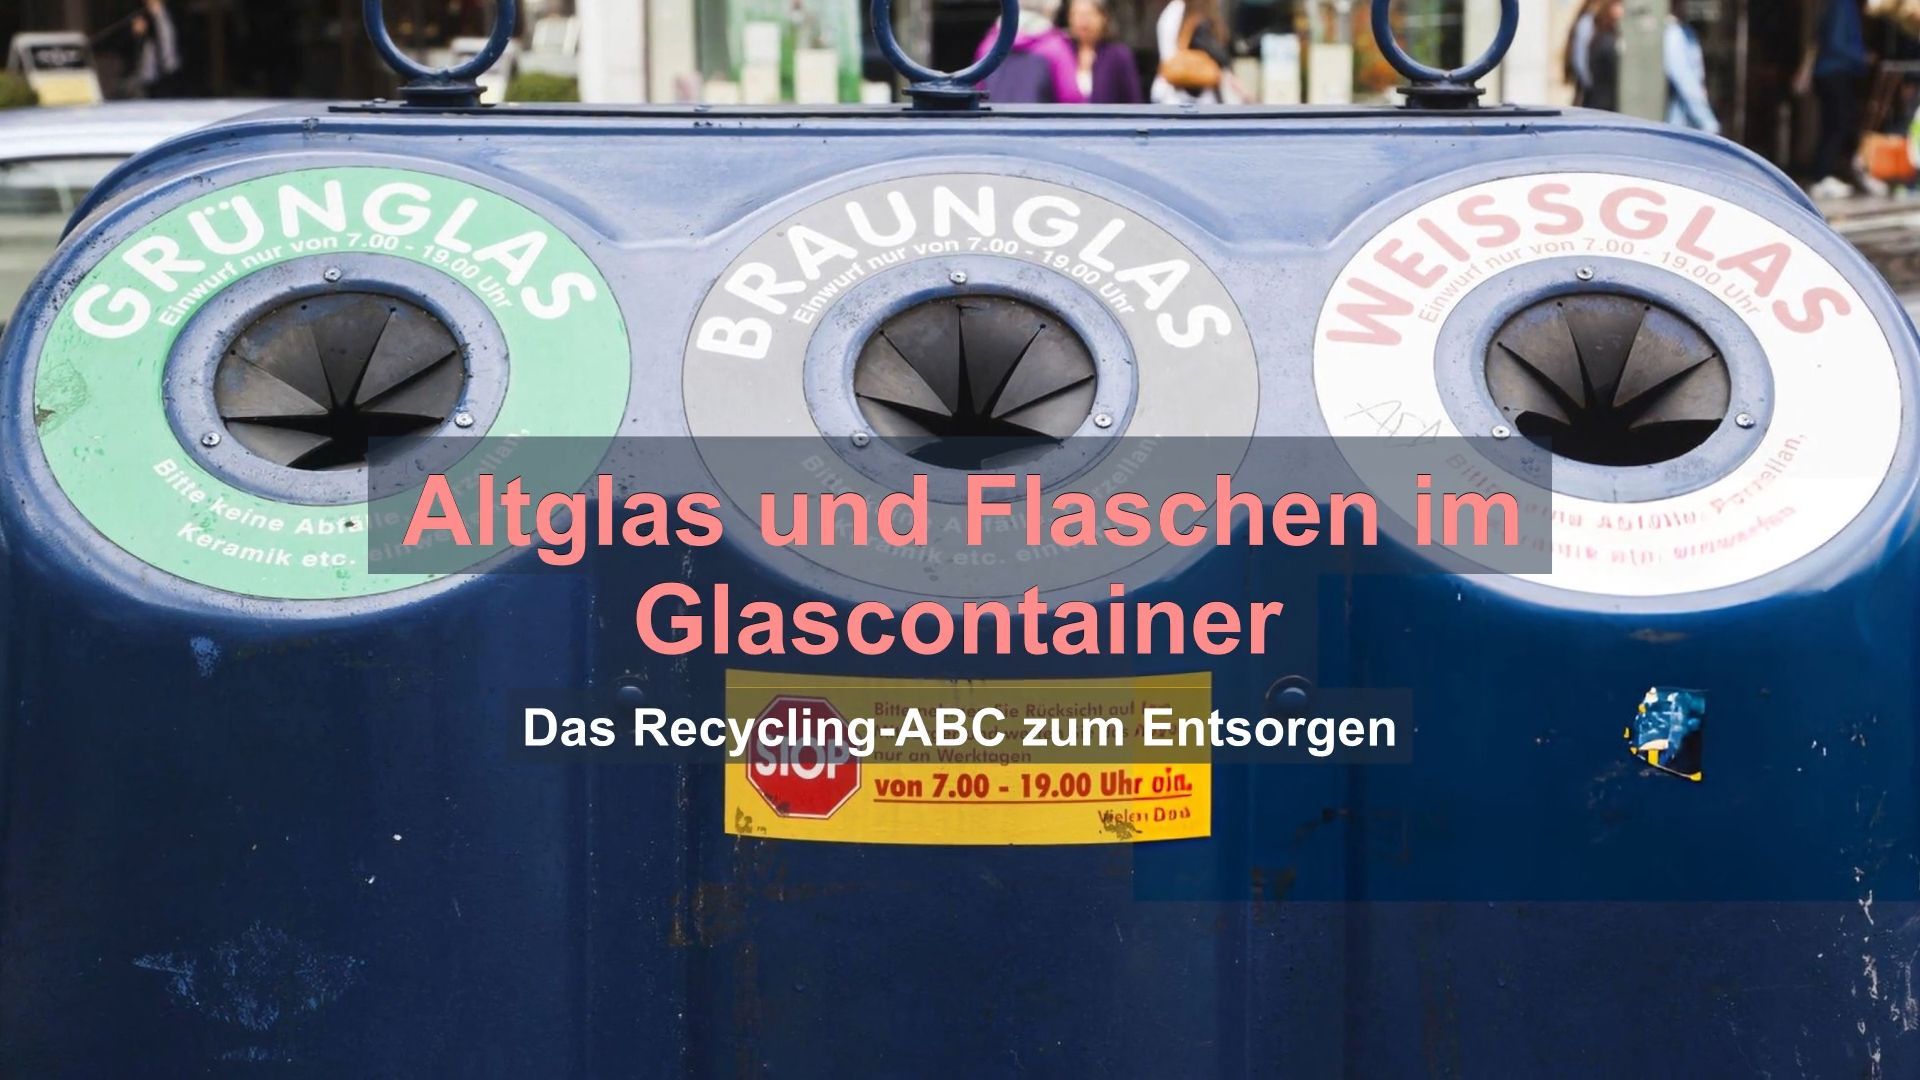 Altglas und Flaschen im Glascontainer: Das Recycling-ABC zum Entsorgen